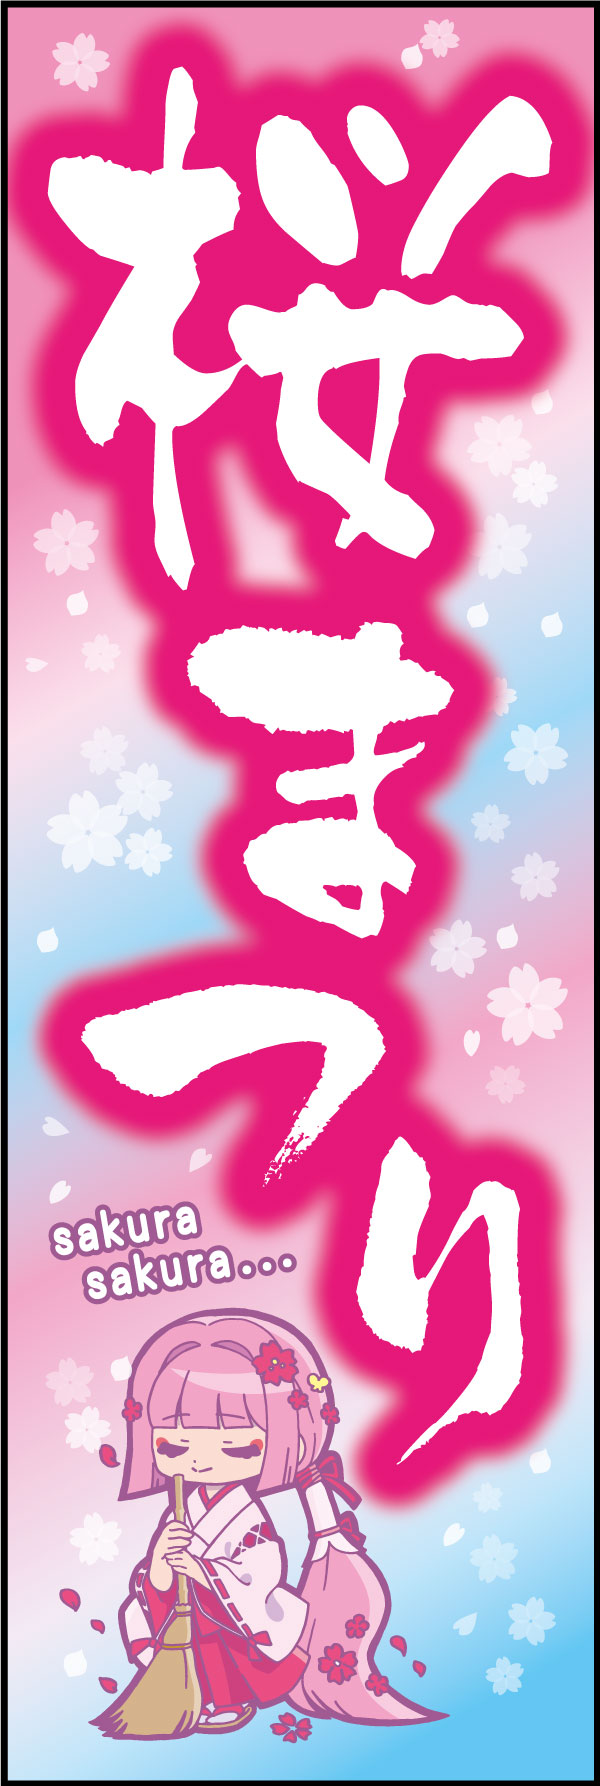 桜祭り 163_01 「桜まつり」のぼりです。青空に舞う桜を背景に、アニメキャラ風の巫女さんの少女が若年層にもアピールします。桜の名所の神社仏閣におすすめののぼりです。（M.H)